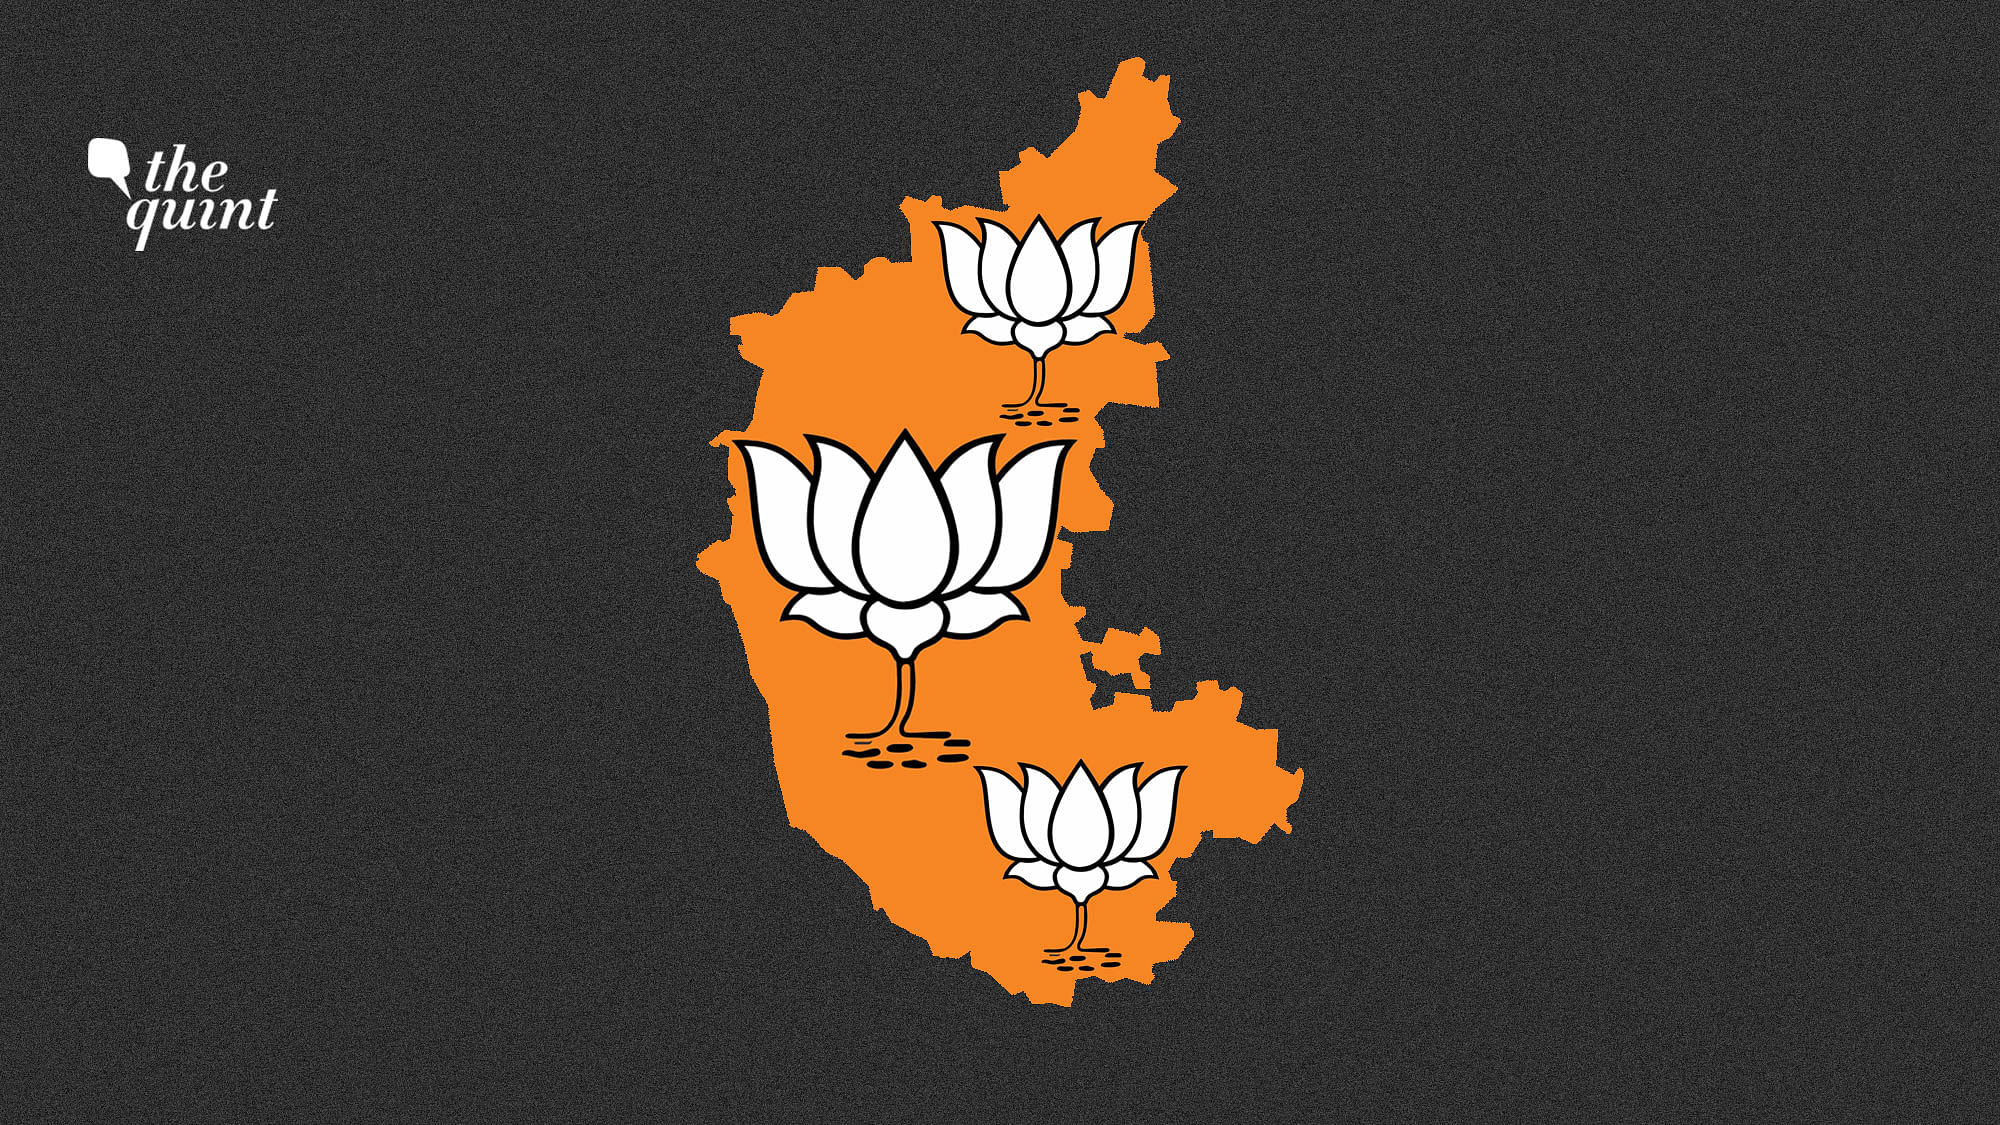 Image of Karnataka map and BJP symbol used for representational purposes.